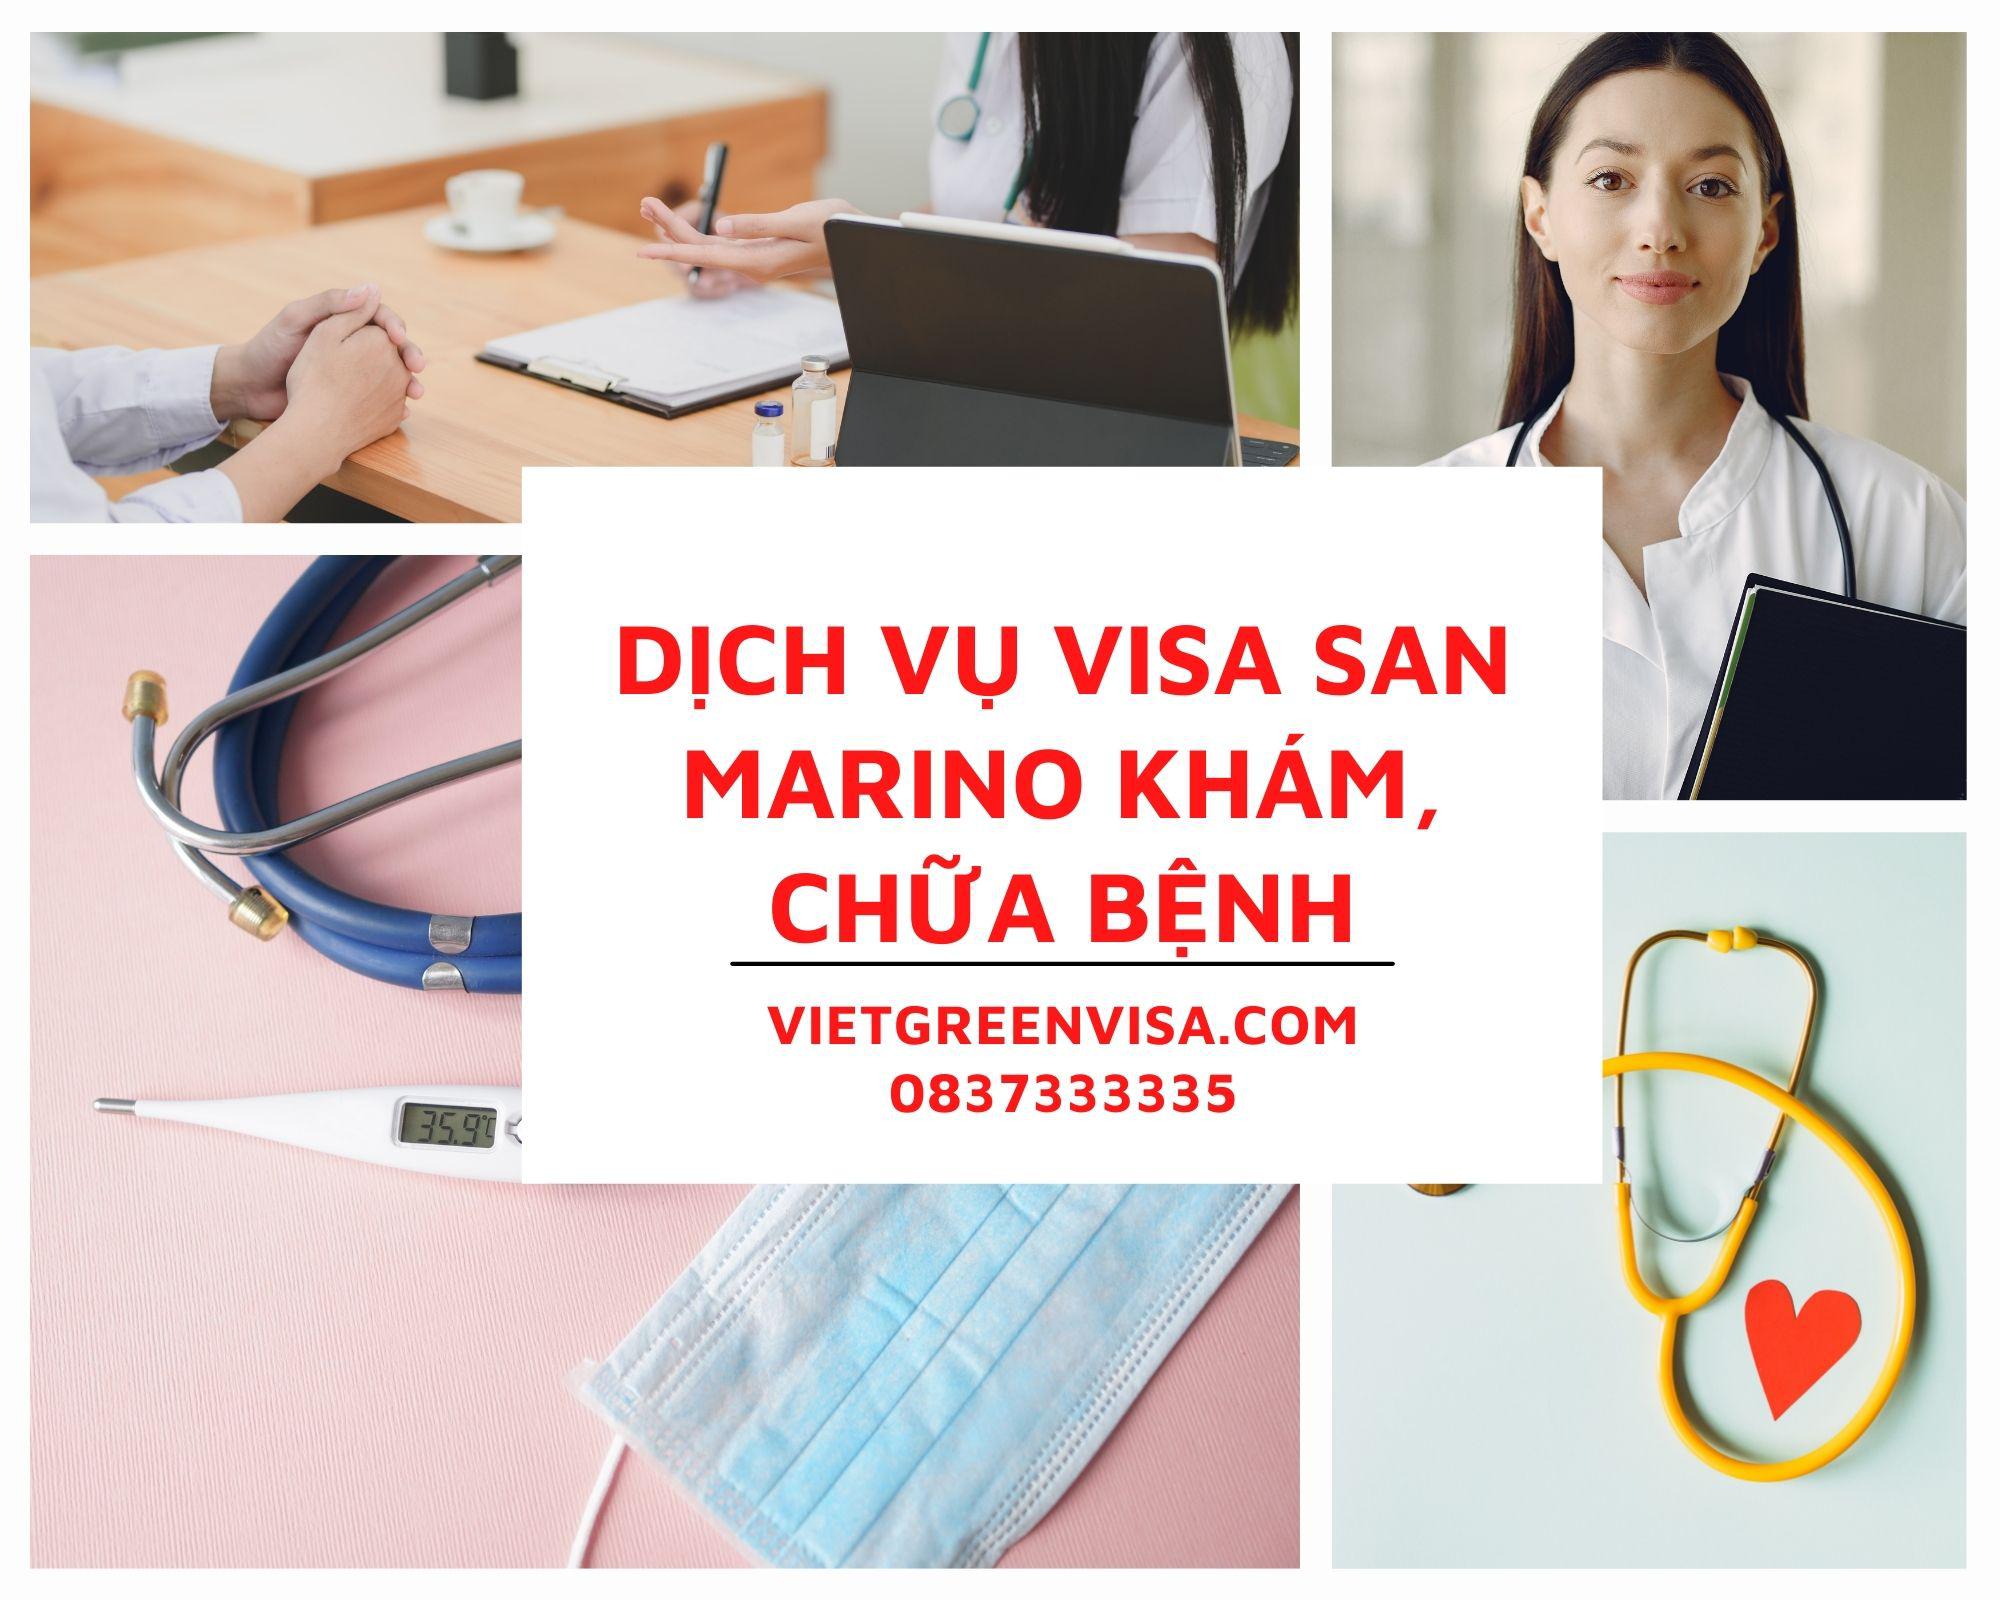 Dịch vụ visa đi San Marino khám chữa bệnh uy tín